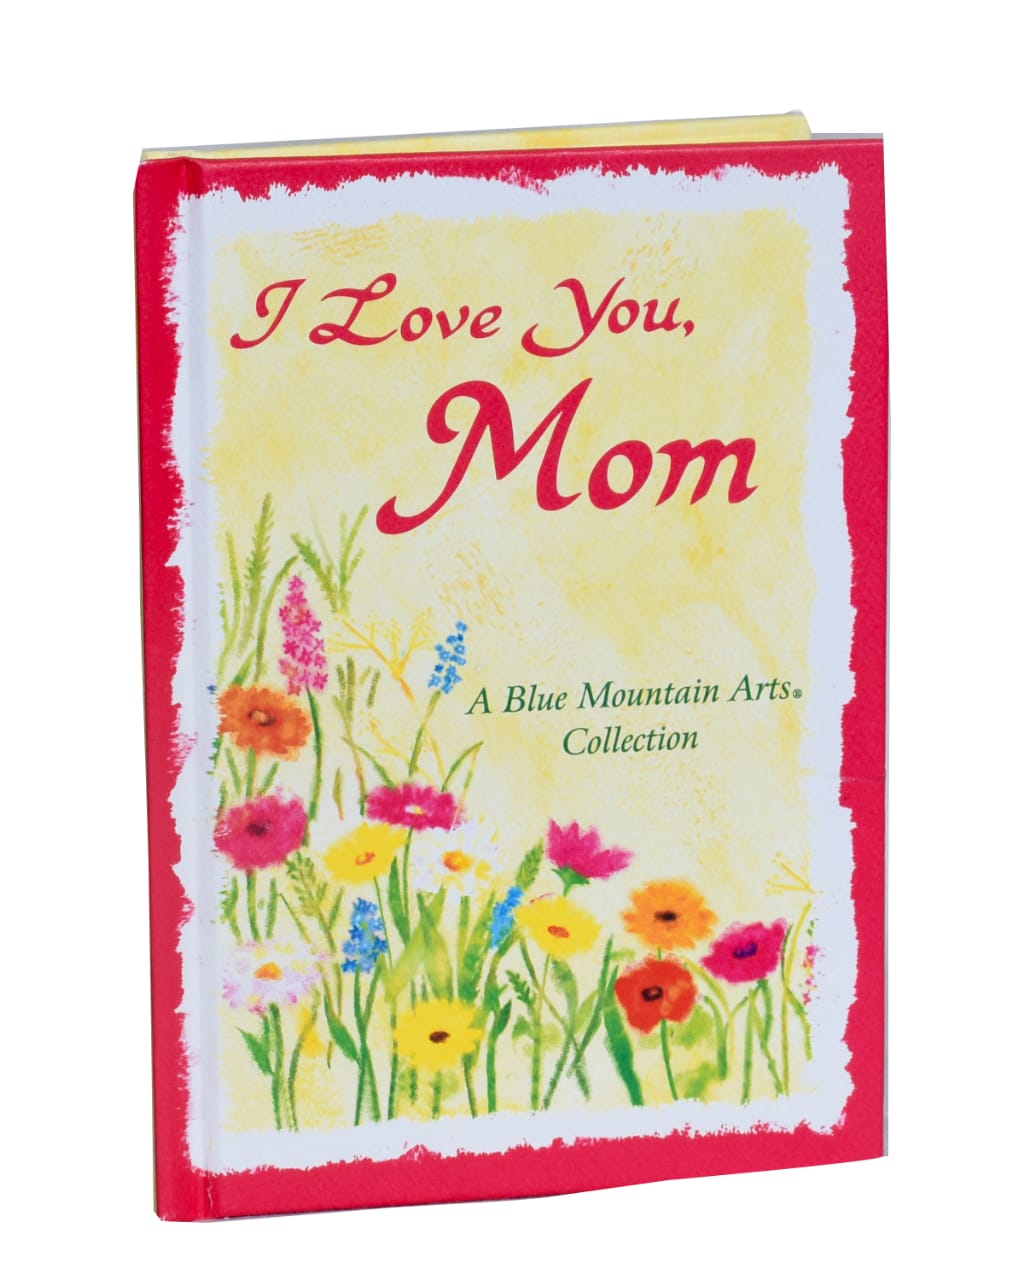 I LOVE YOU MOM - Polka Dot Gift Shop Kenya